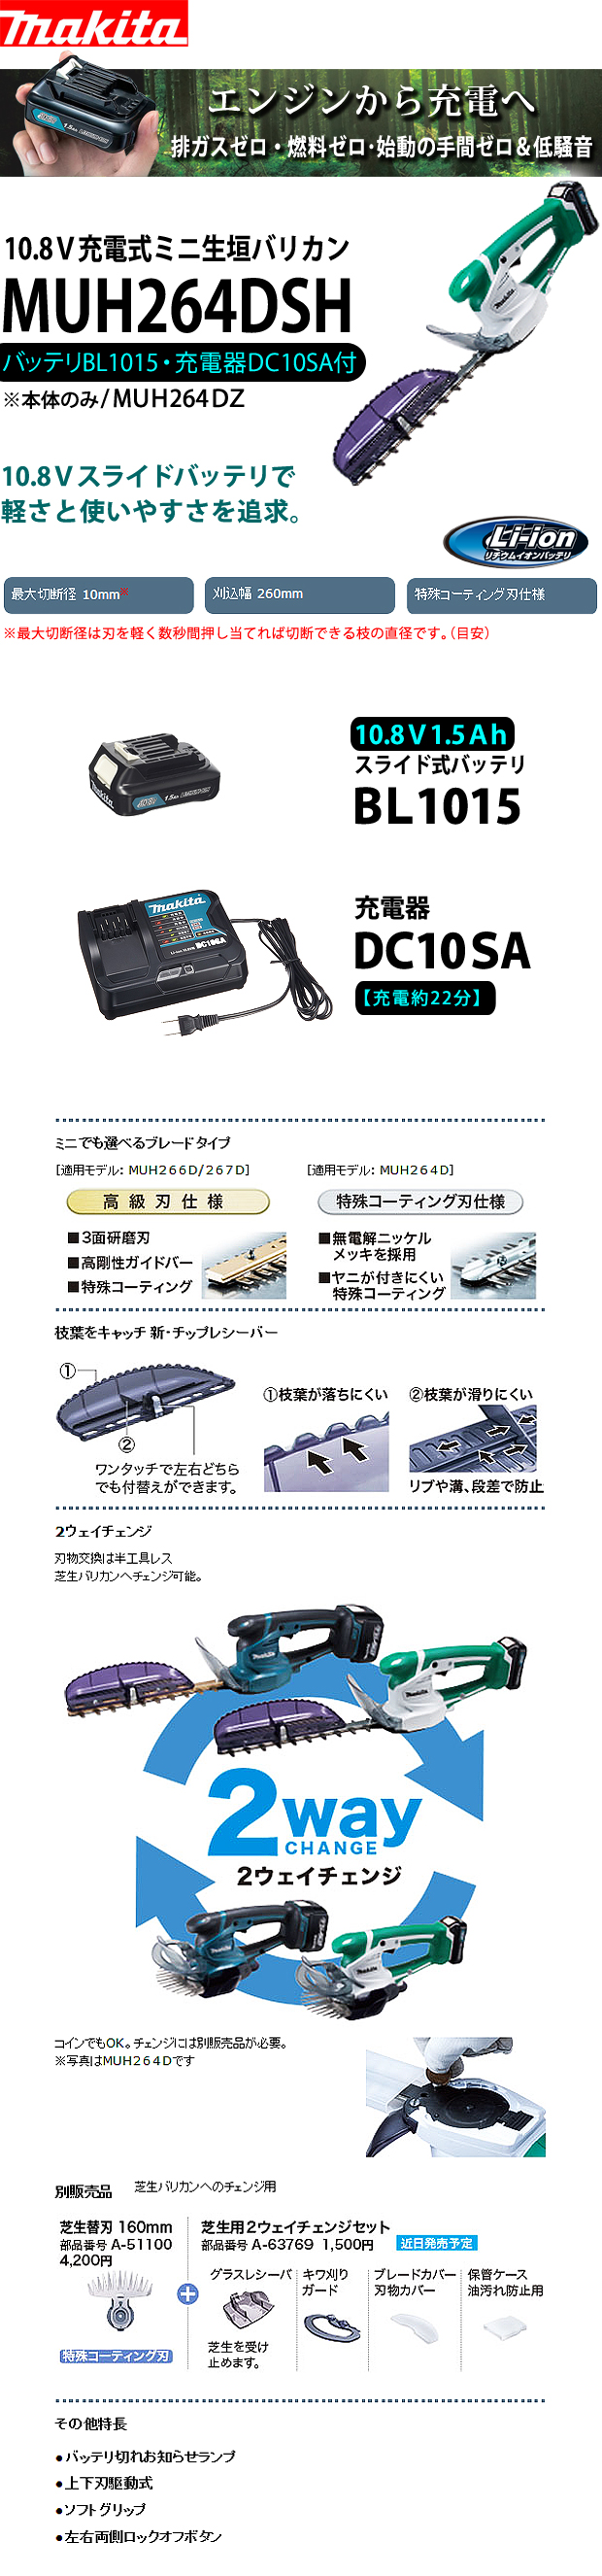 マキタ 10.8V 充電式ミニ生垣バリカン MUH264DSH 260mm 1.5Ah 特殊コーディング刃仕様 セット - 4